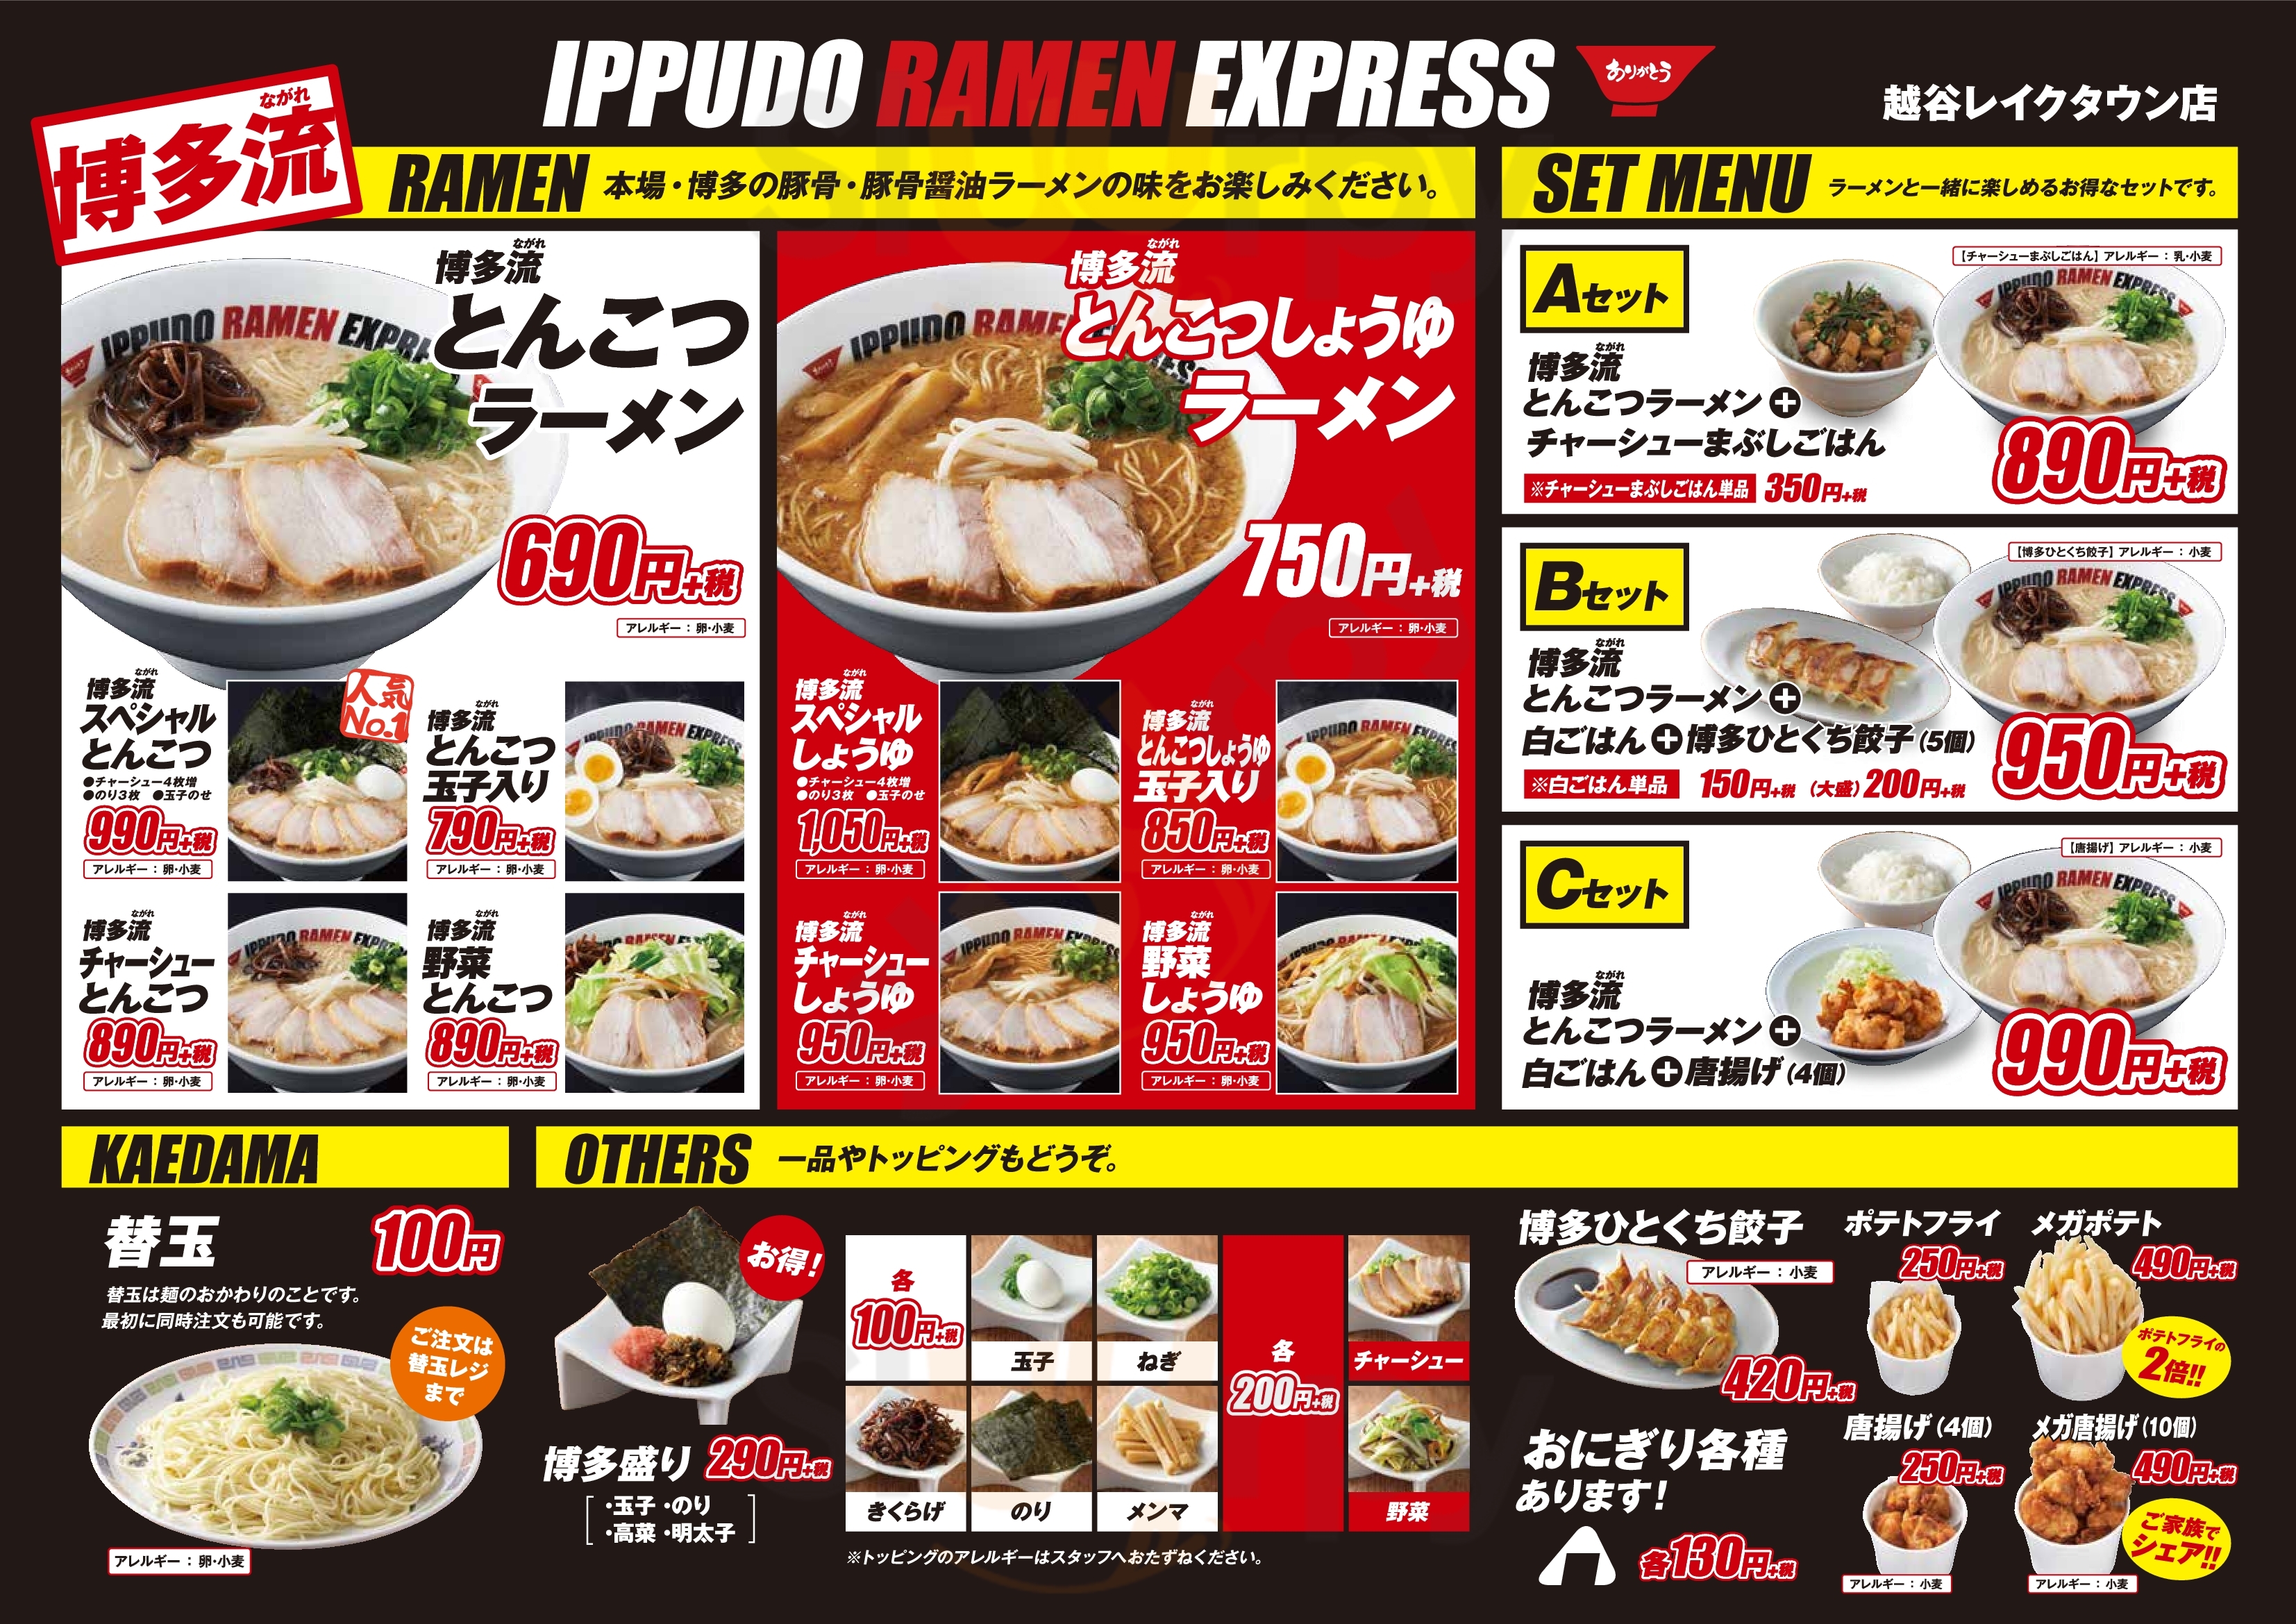 Ippudo Ramen Express 越谷レイクタウン店 越谷市 Menu - 1